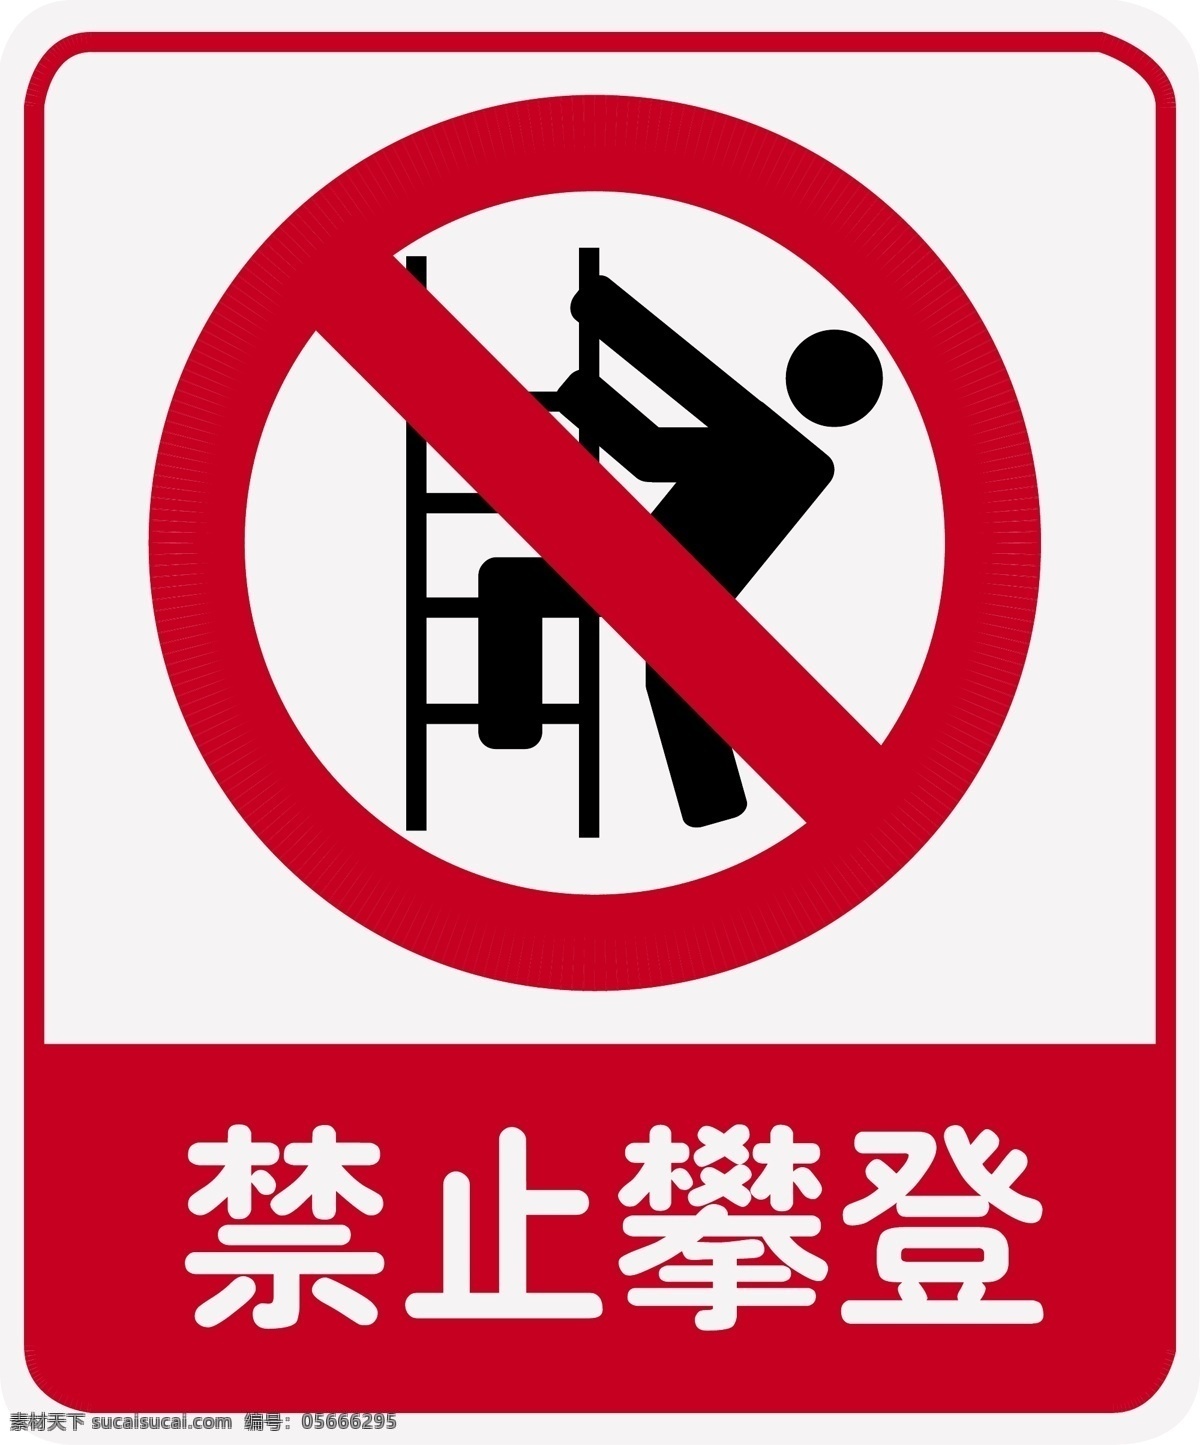 禁止攀登 安全警示牌 攀登 警示牌 不准攀登 公共标识标志 标识标志图标 矢量